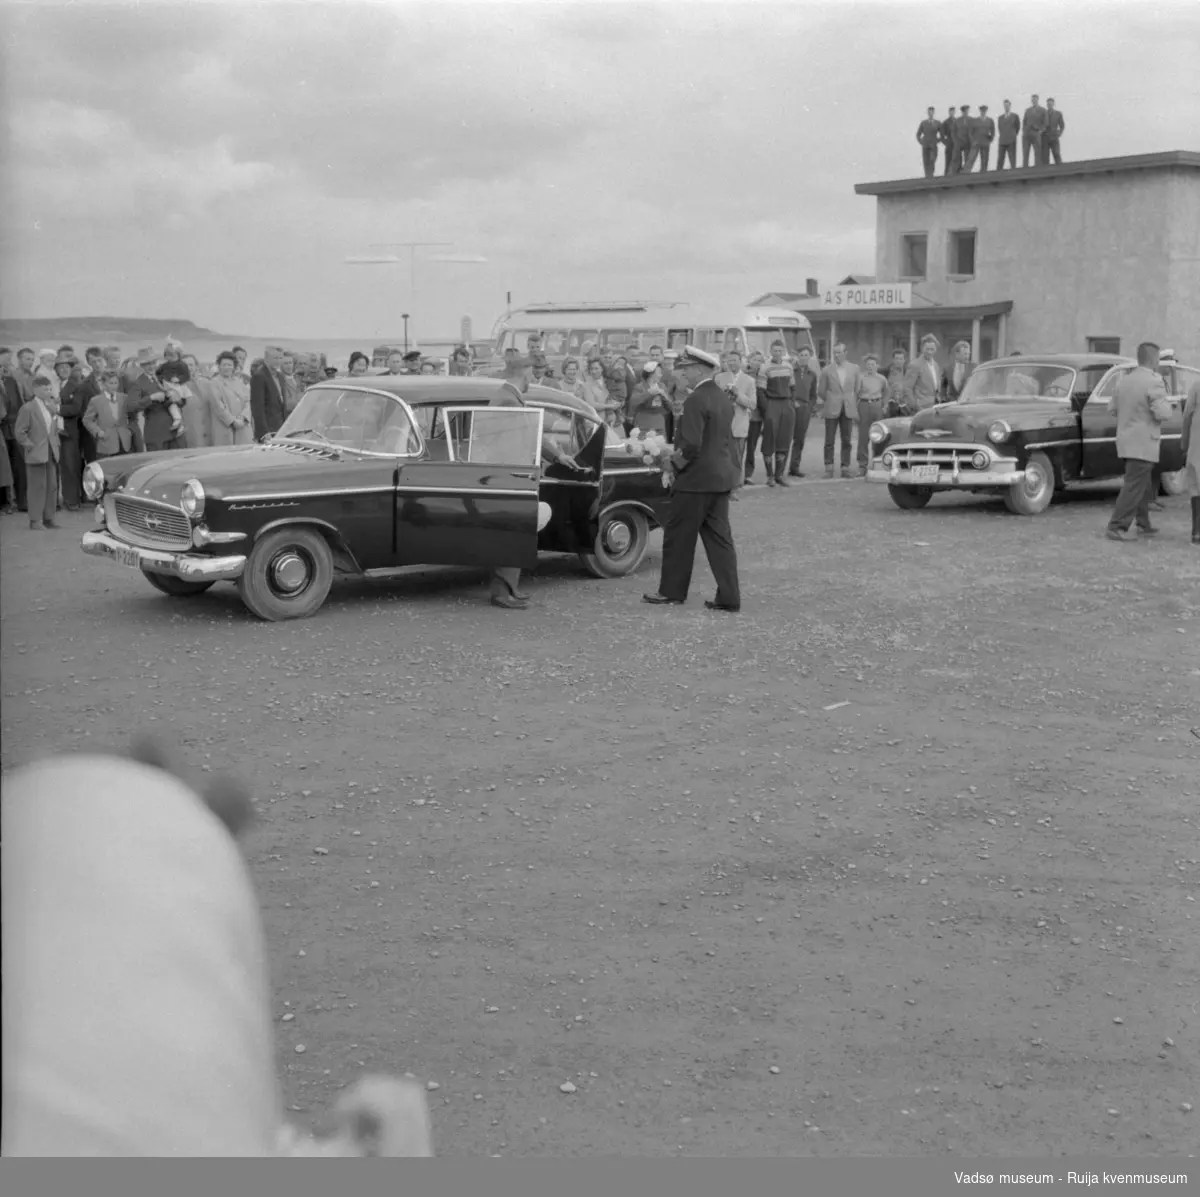 Vadsø juli 1959. Kongebesøk. Kong Olav på vei inn i bil Y-2201, drosje Y-2255 står til høyre.